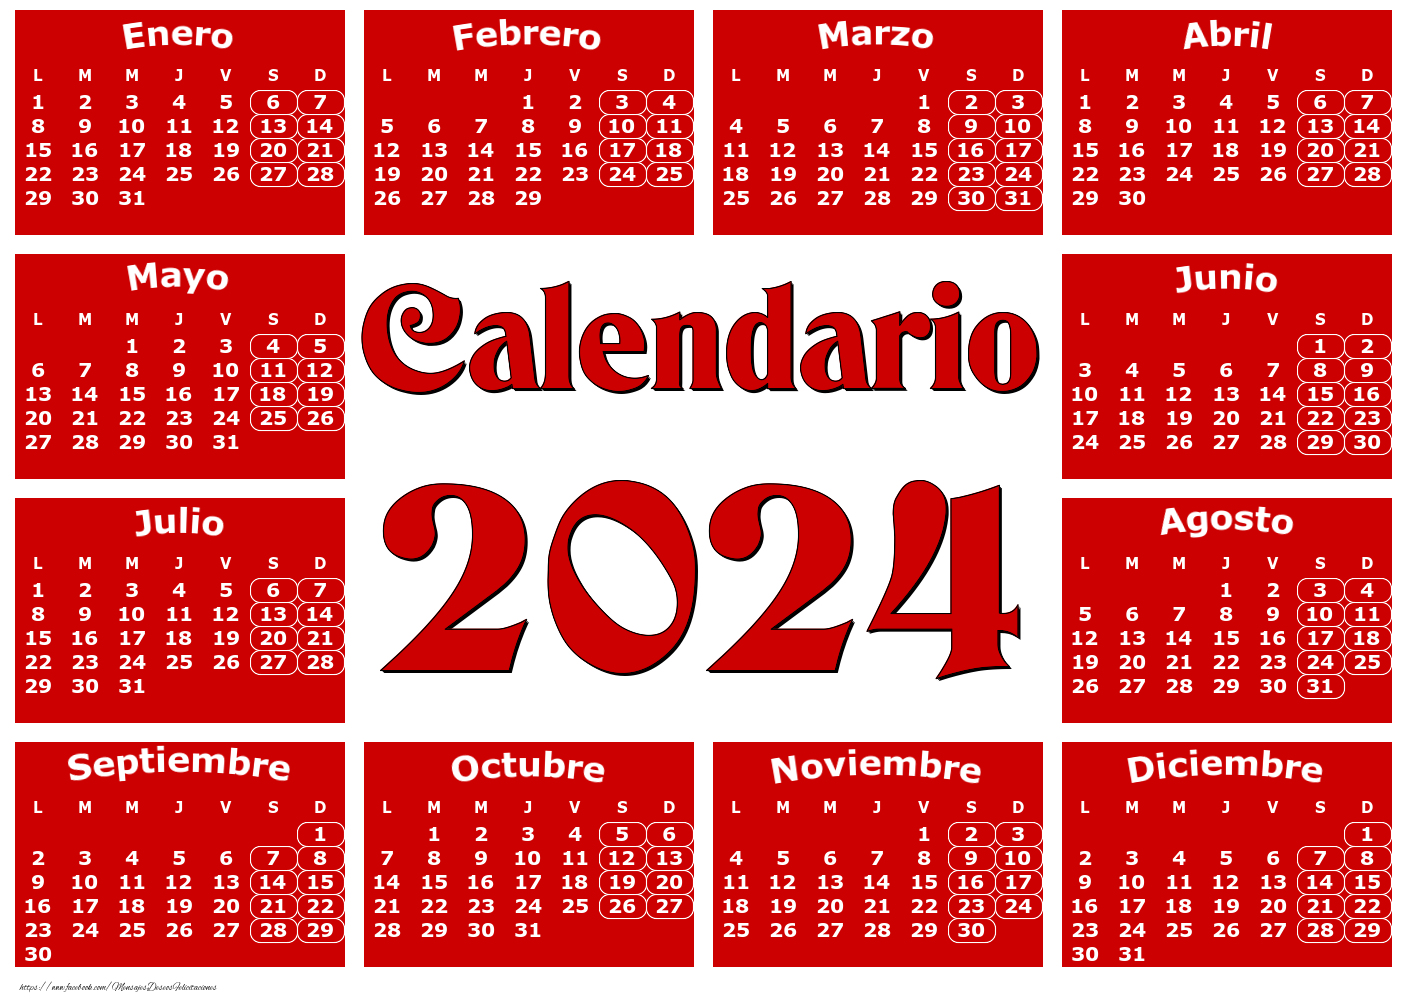 Calendarios Calendario 2024 - Rojo clásico - Modelo 0020